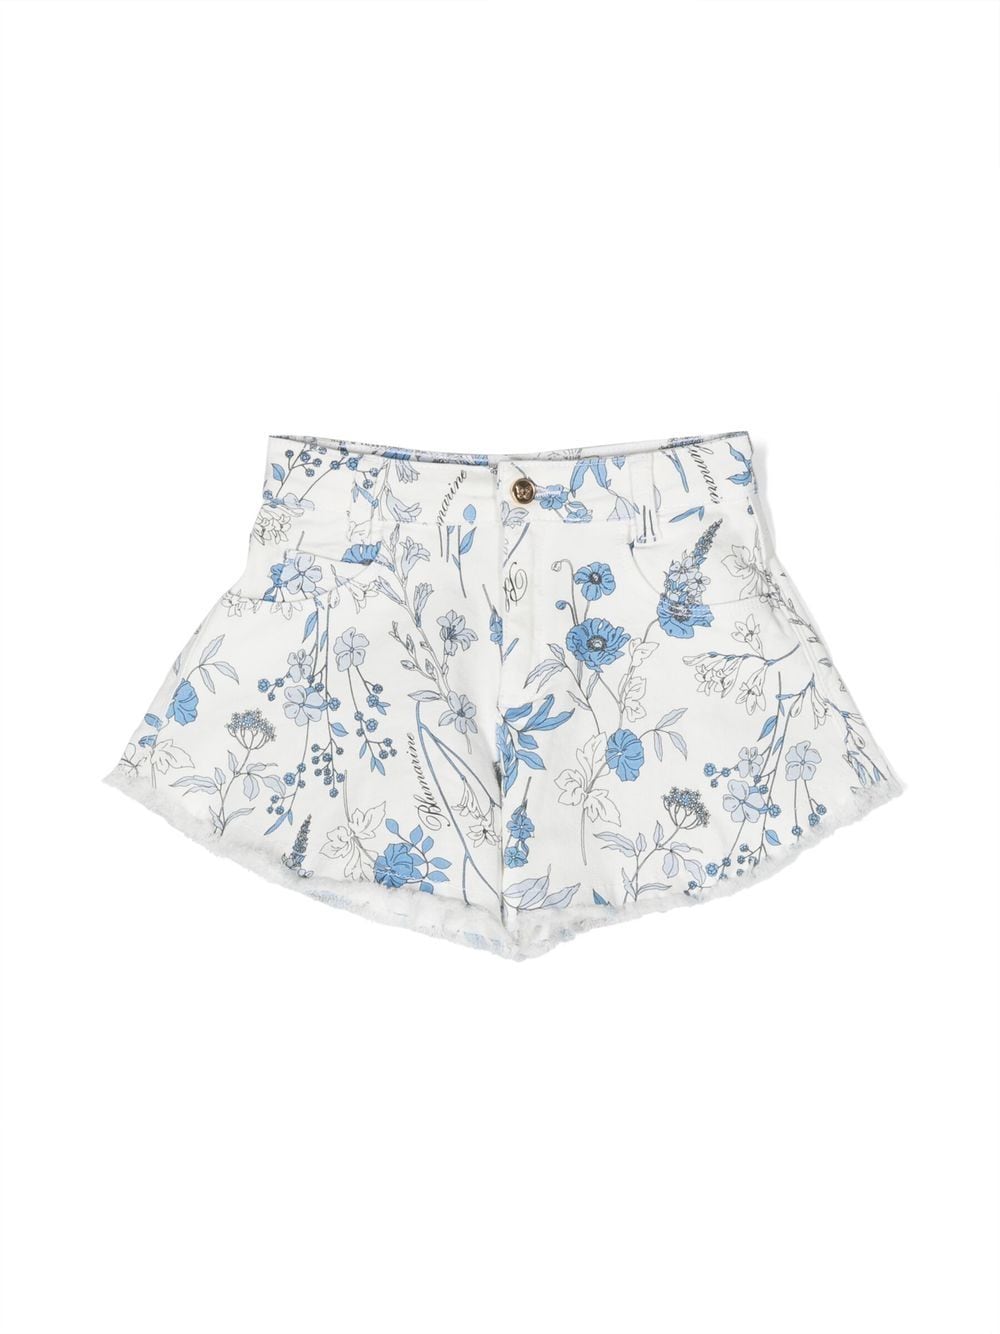 Miss Blumarine floral print shorts - White von Miss Blumarine